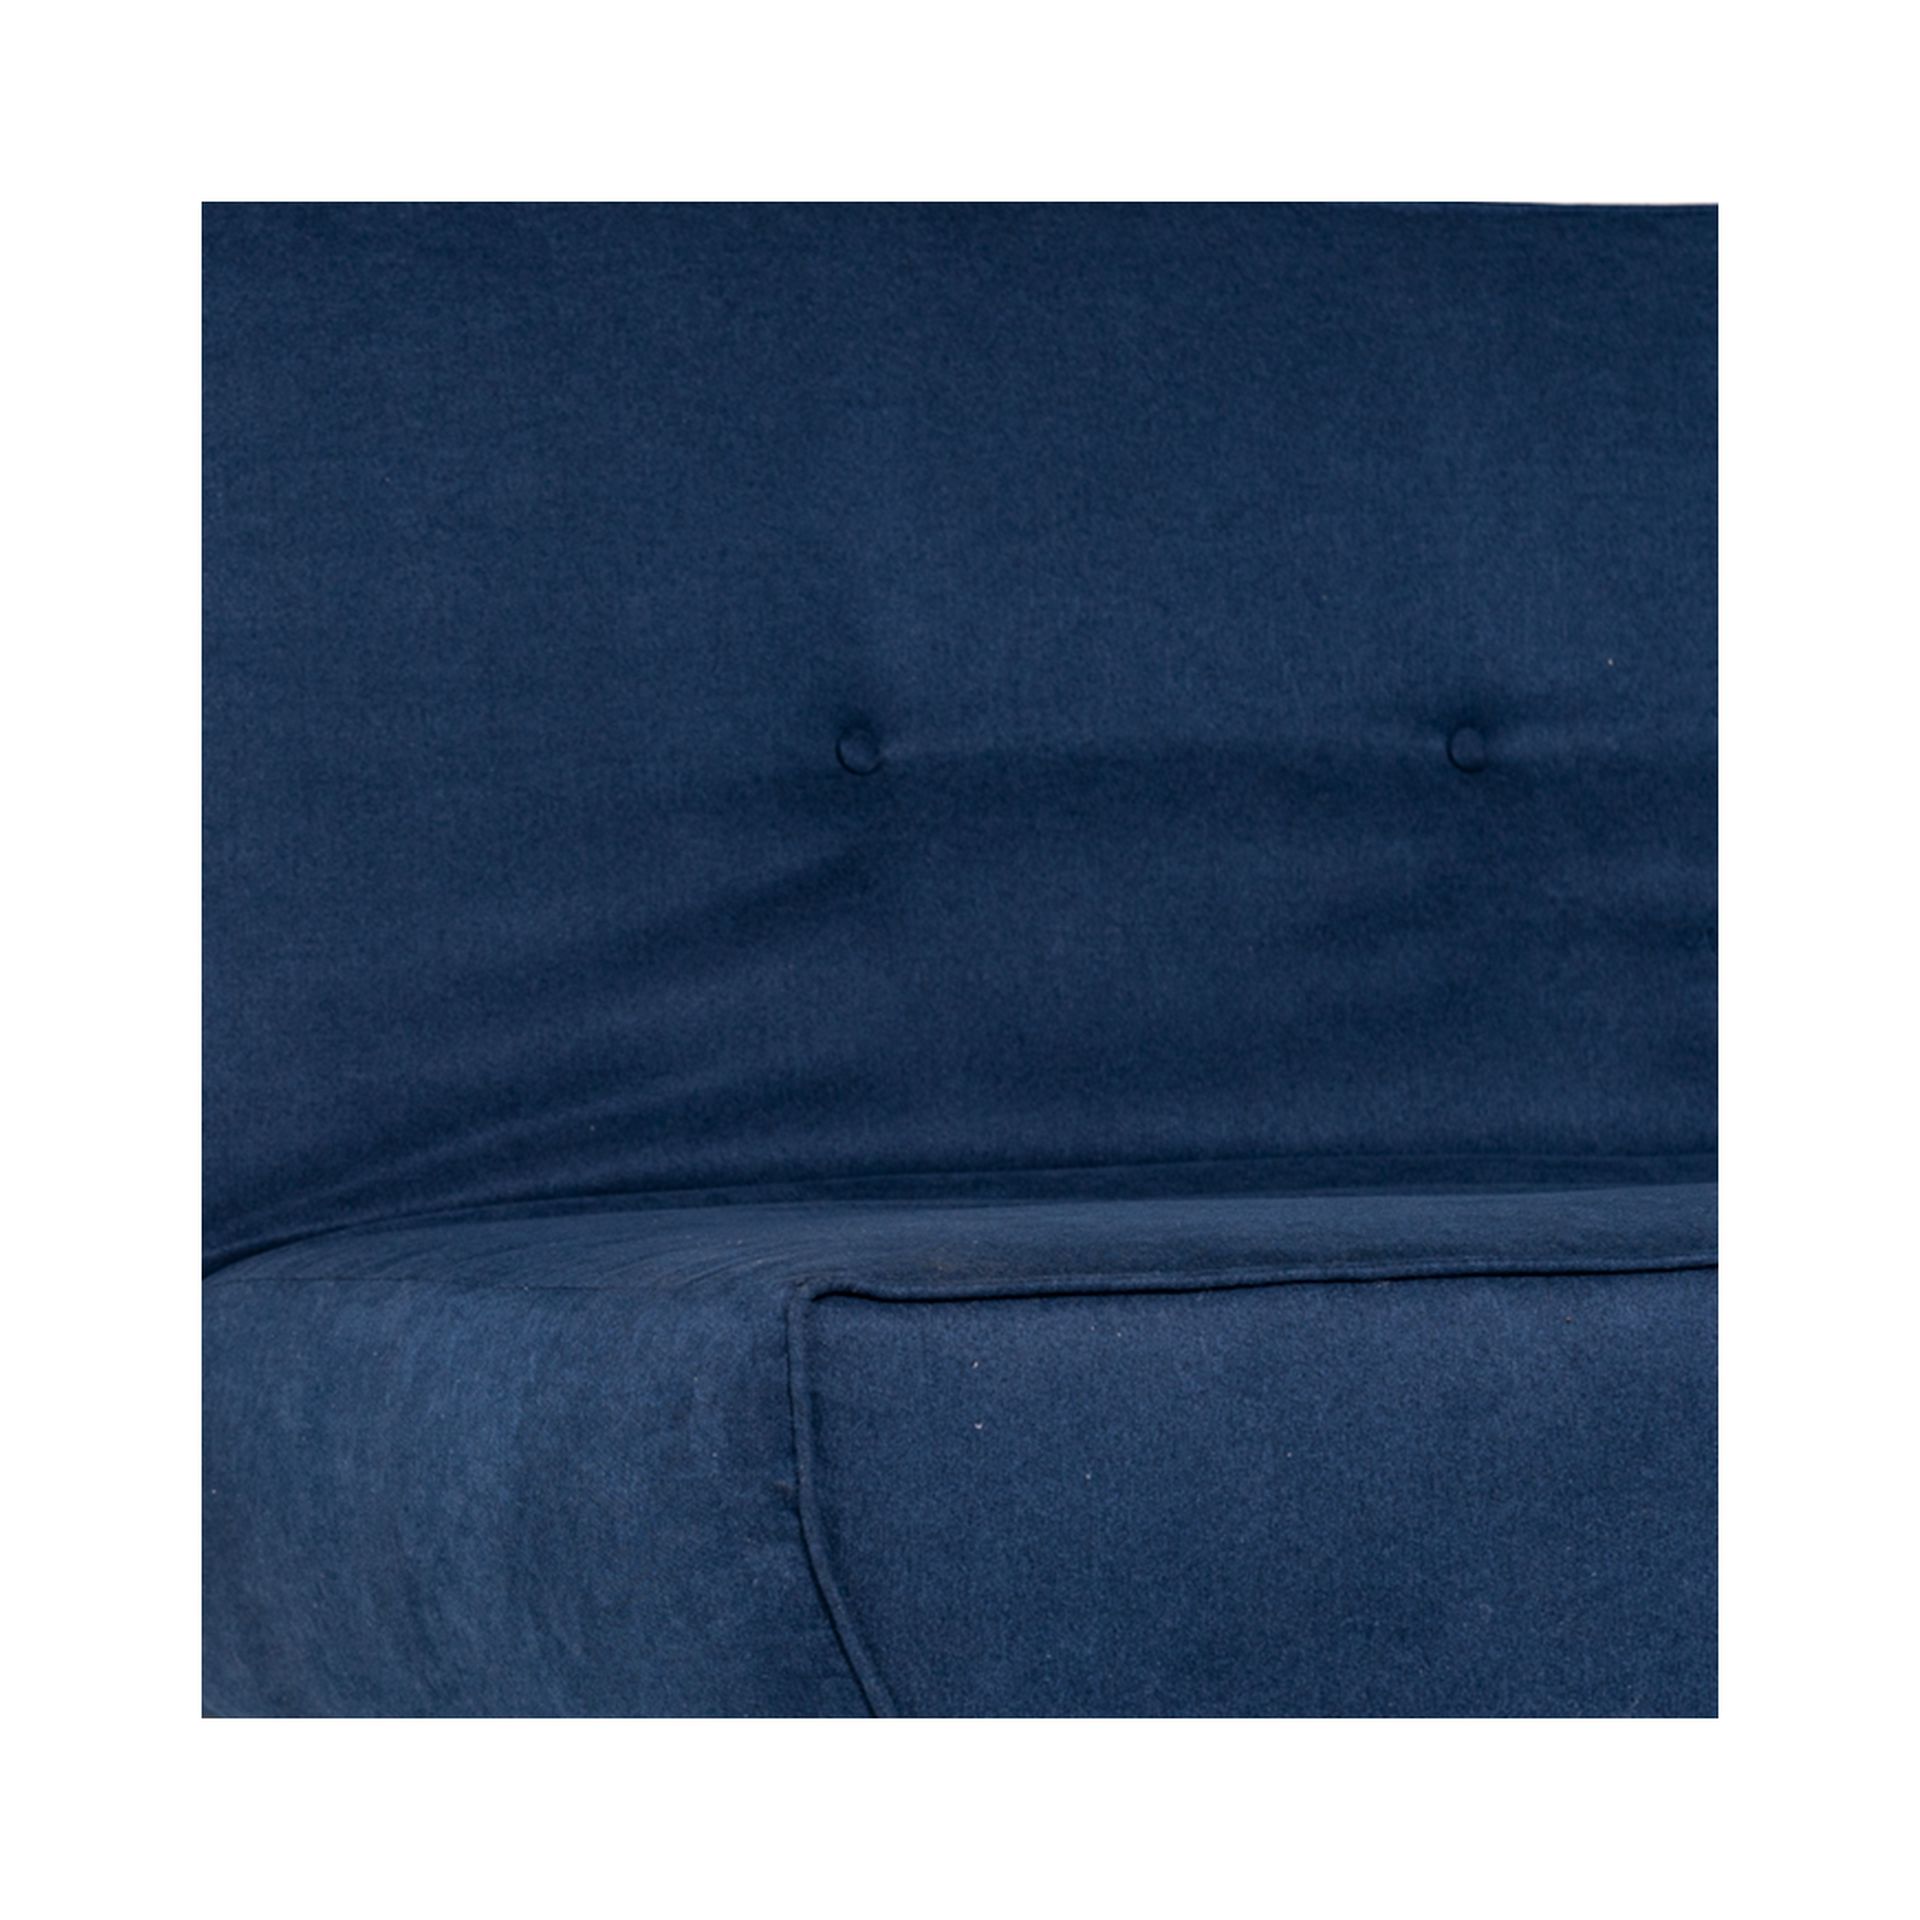 Hecger sofacama azul marino // MP_3